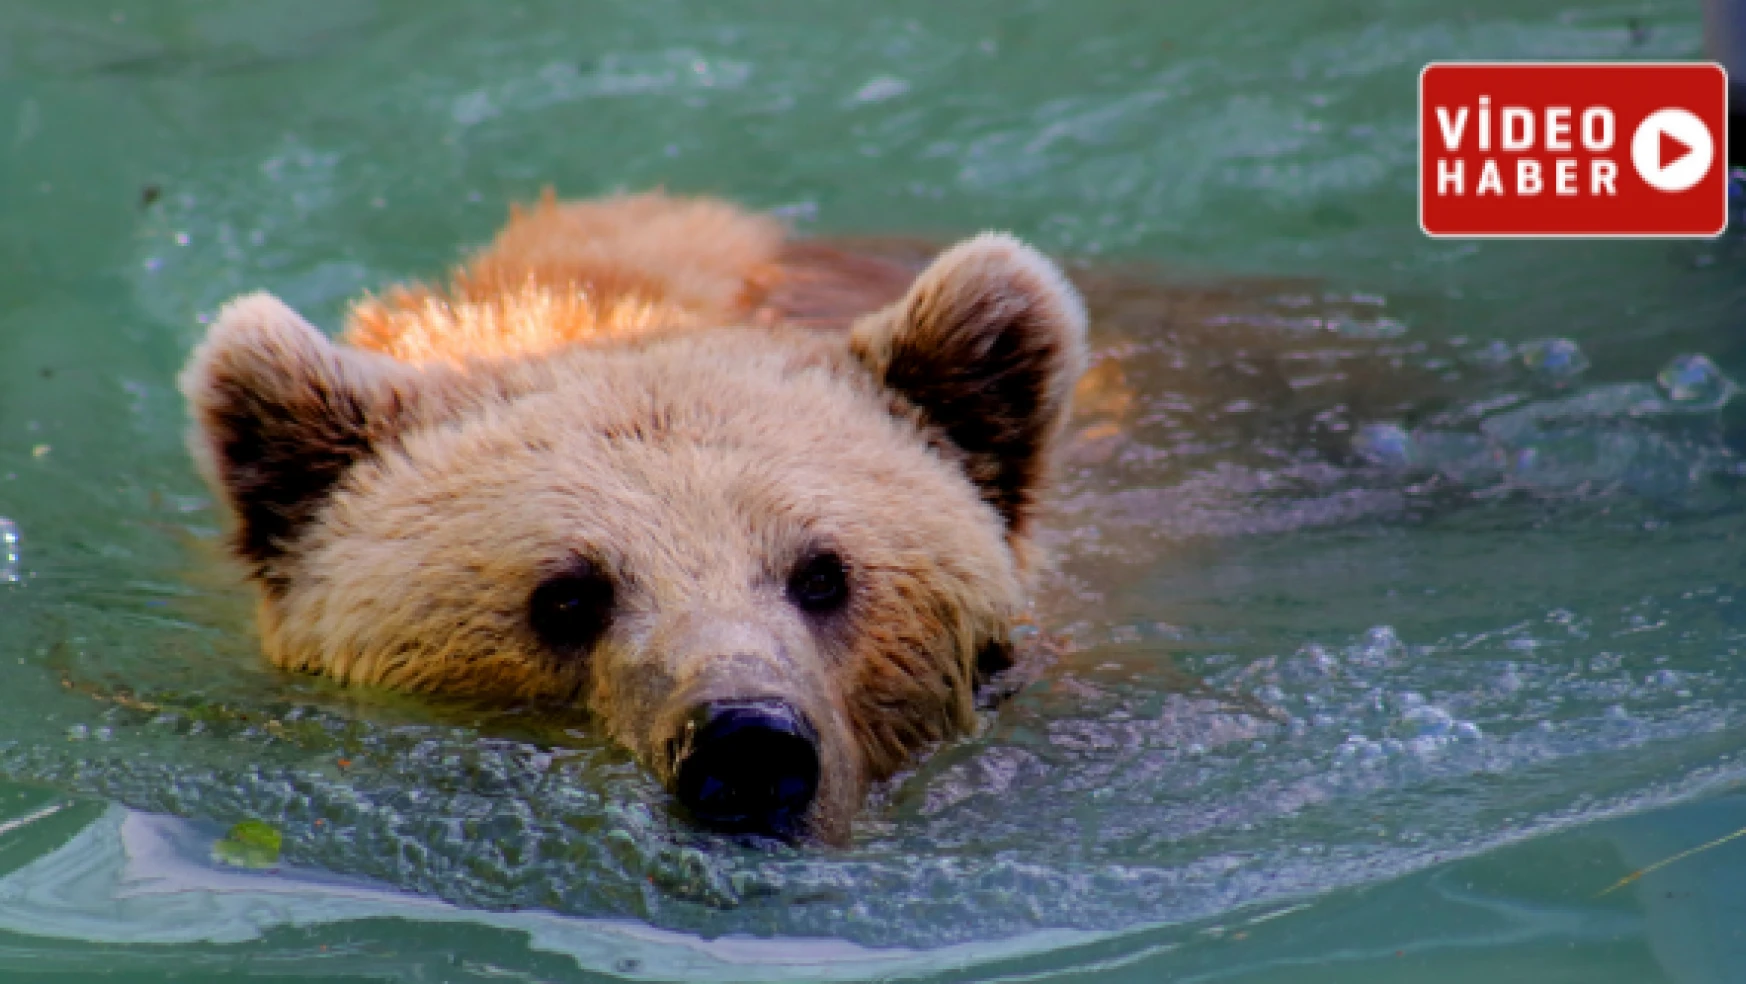 Yalakta yıkanan boz ayılar fotokapana takıldı